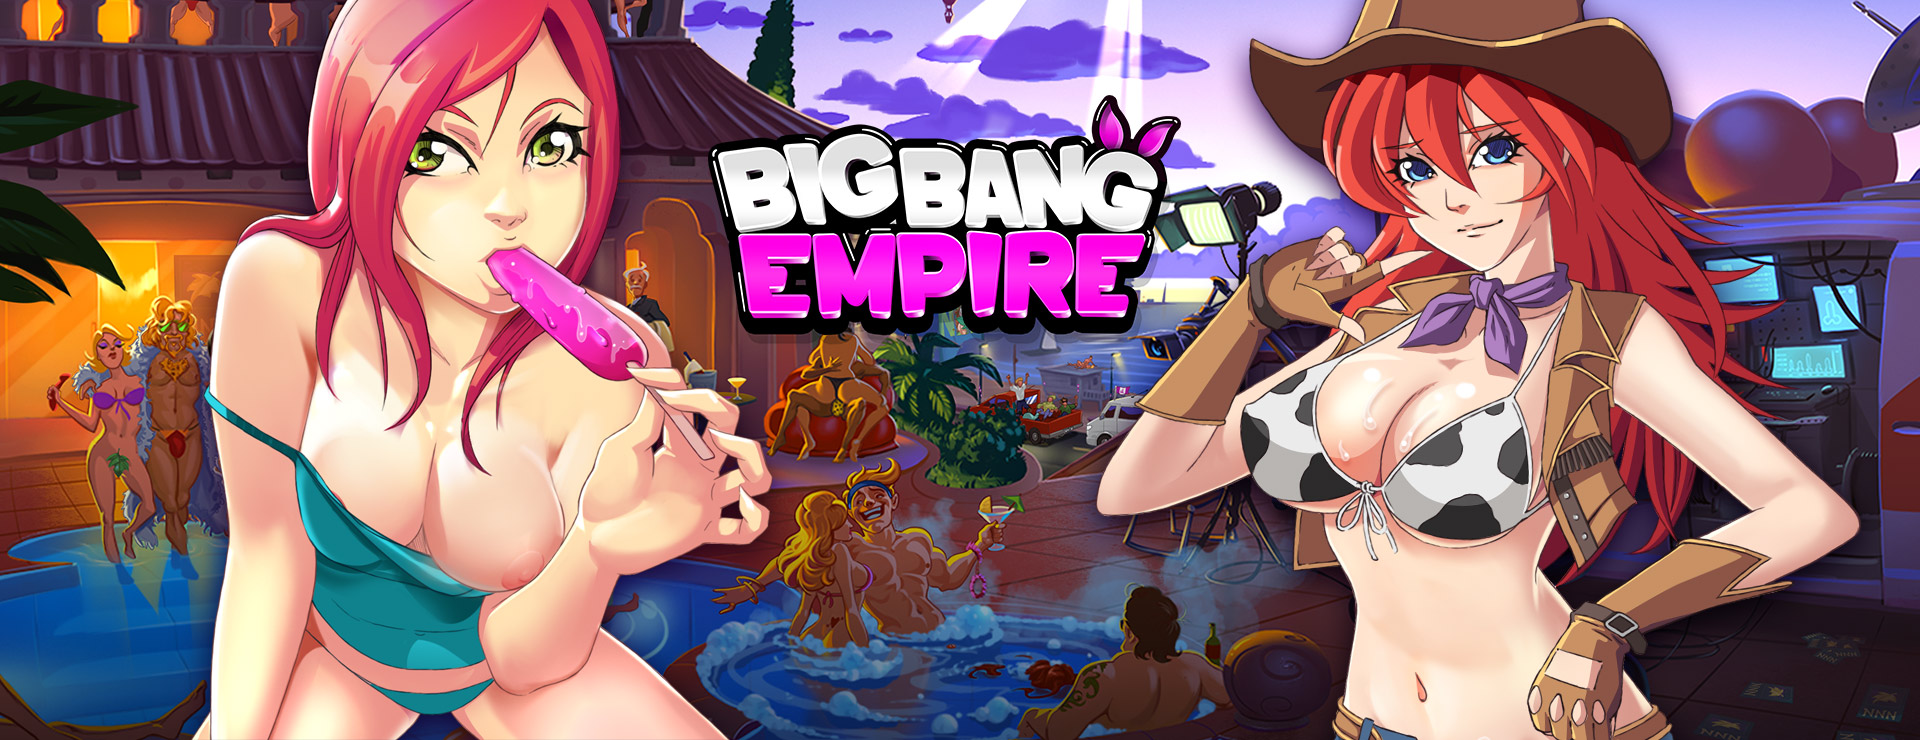 Big Bang Empire - RPG Game